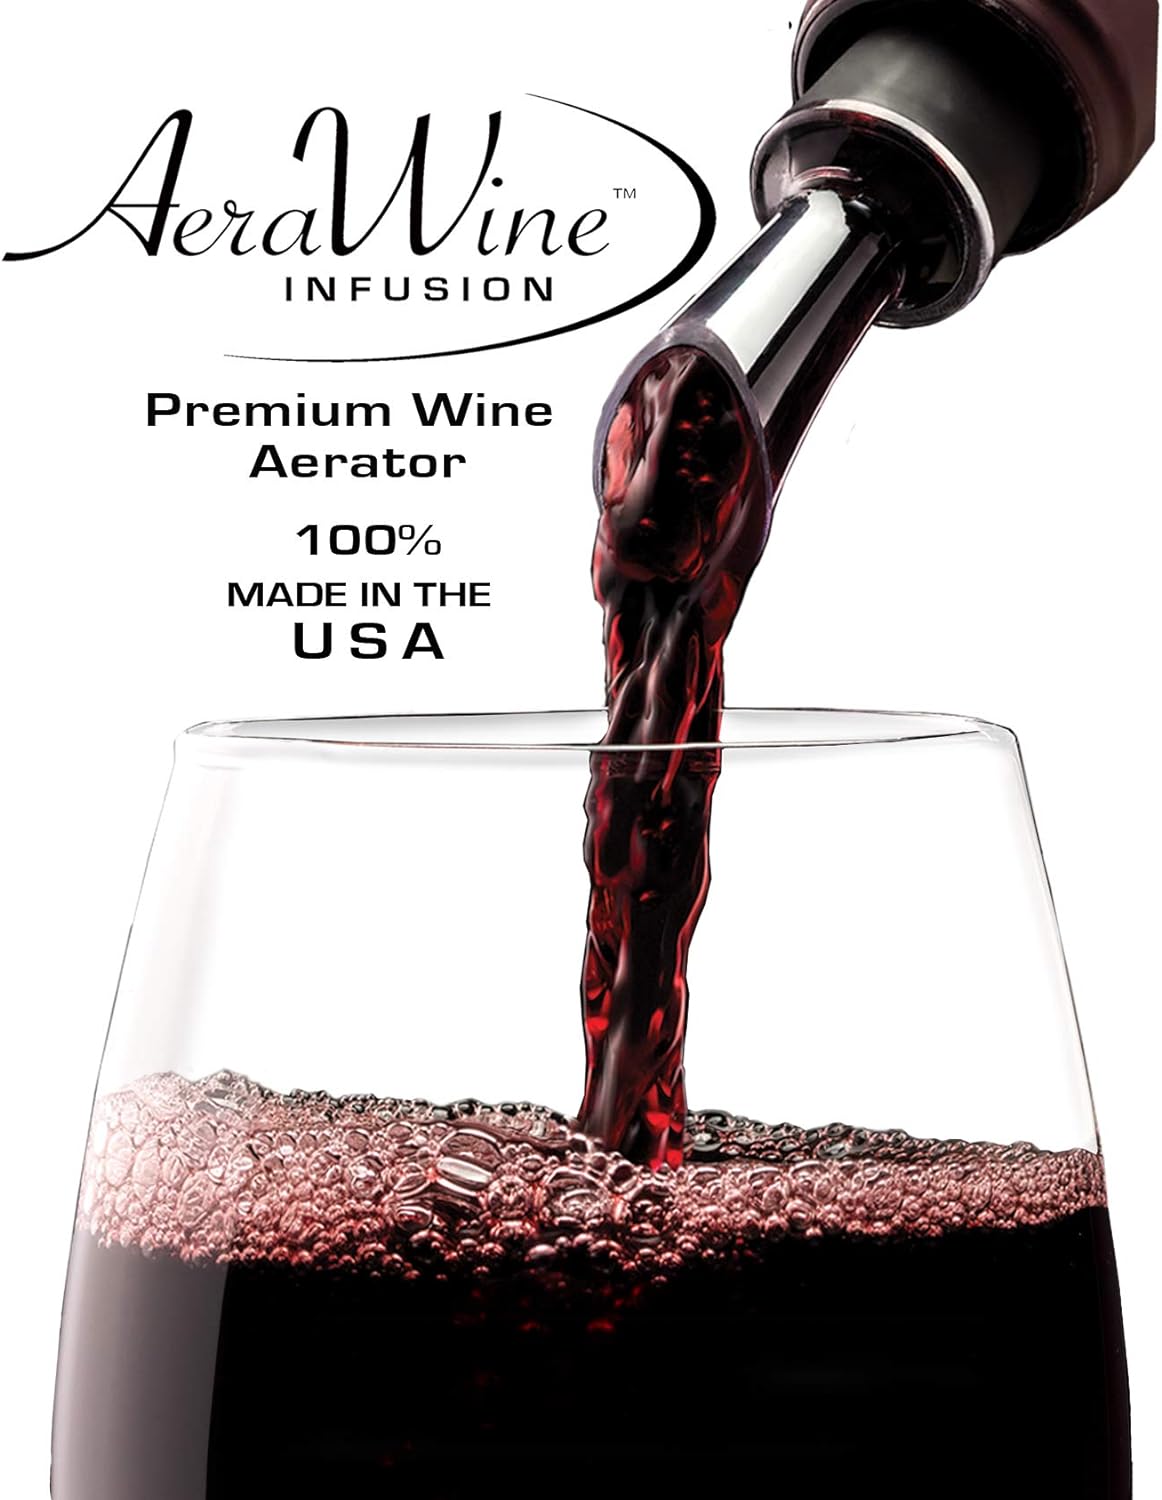 Aerator - Aera Wine